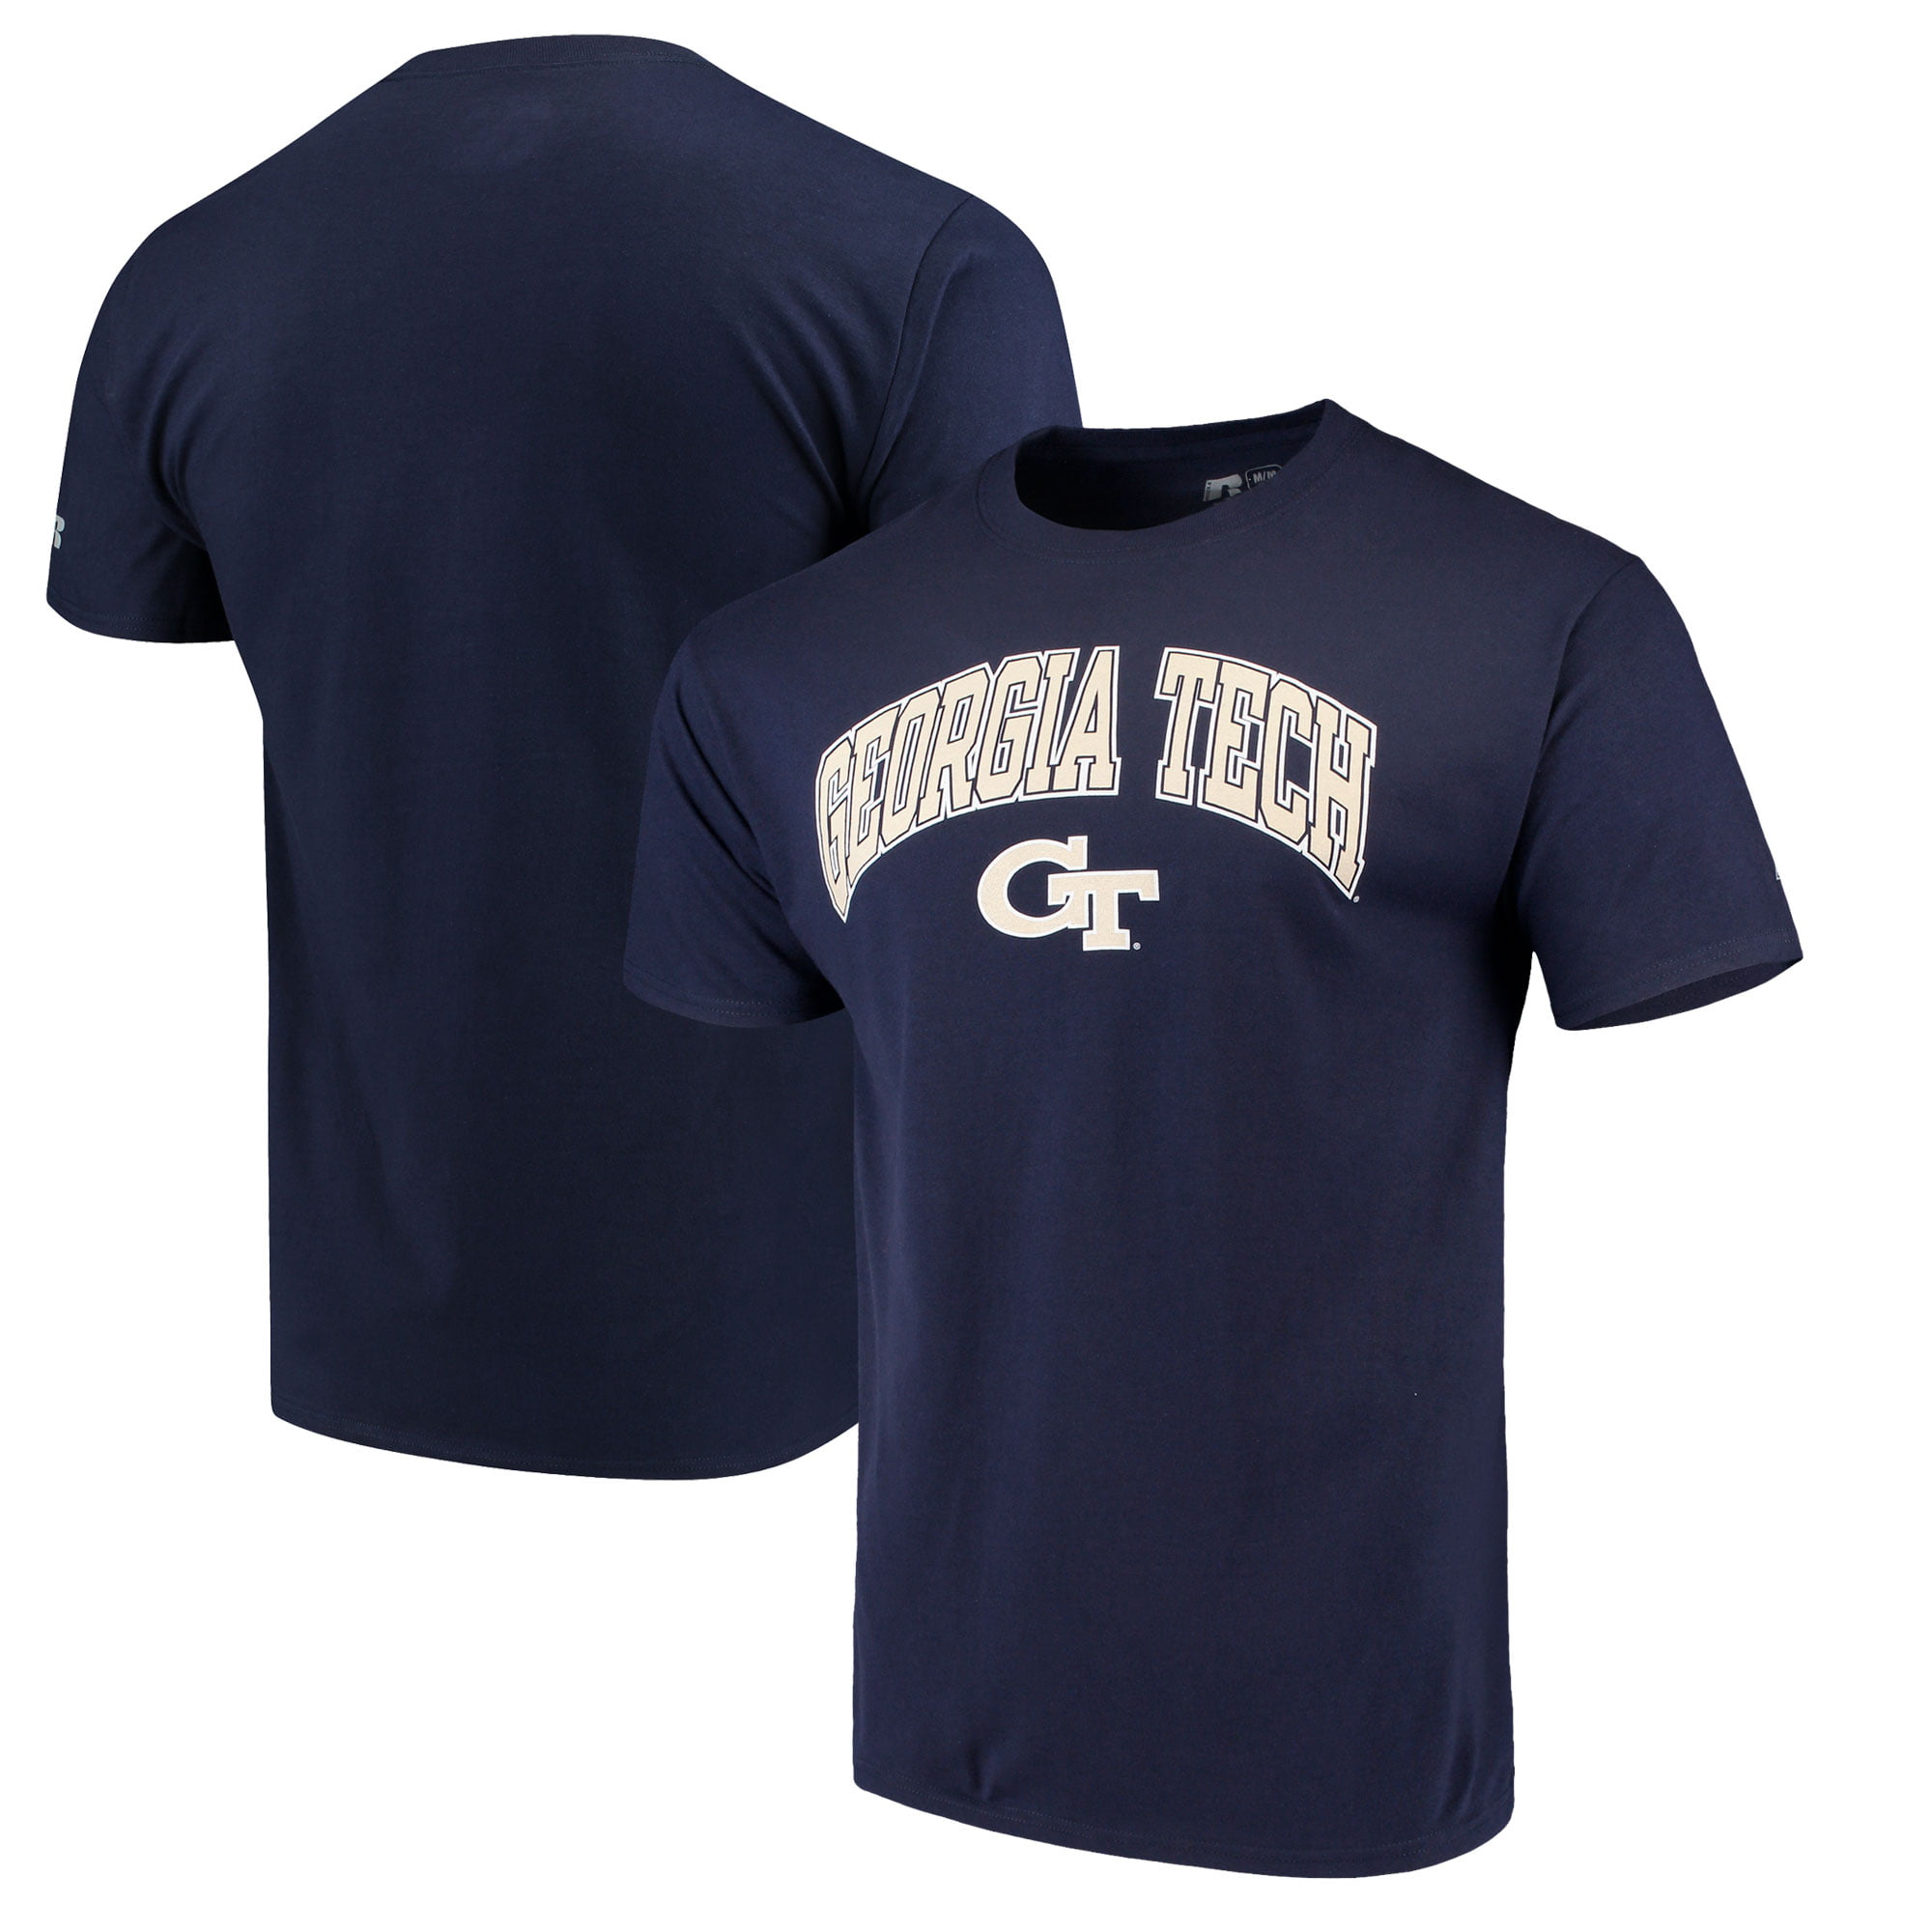 NCAA Georgia Tech Yellow Jackets Men's Classic Cotton T-Shirt - Walmart.com